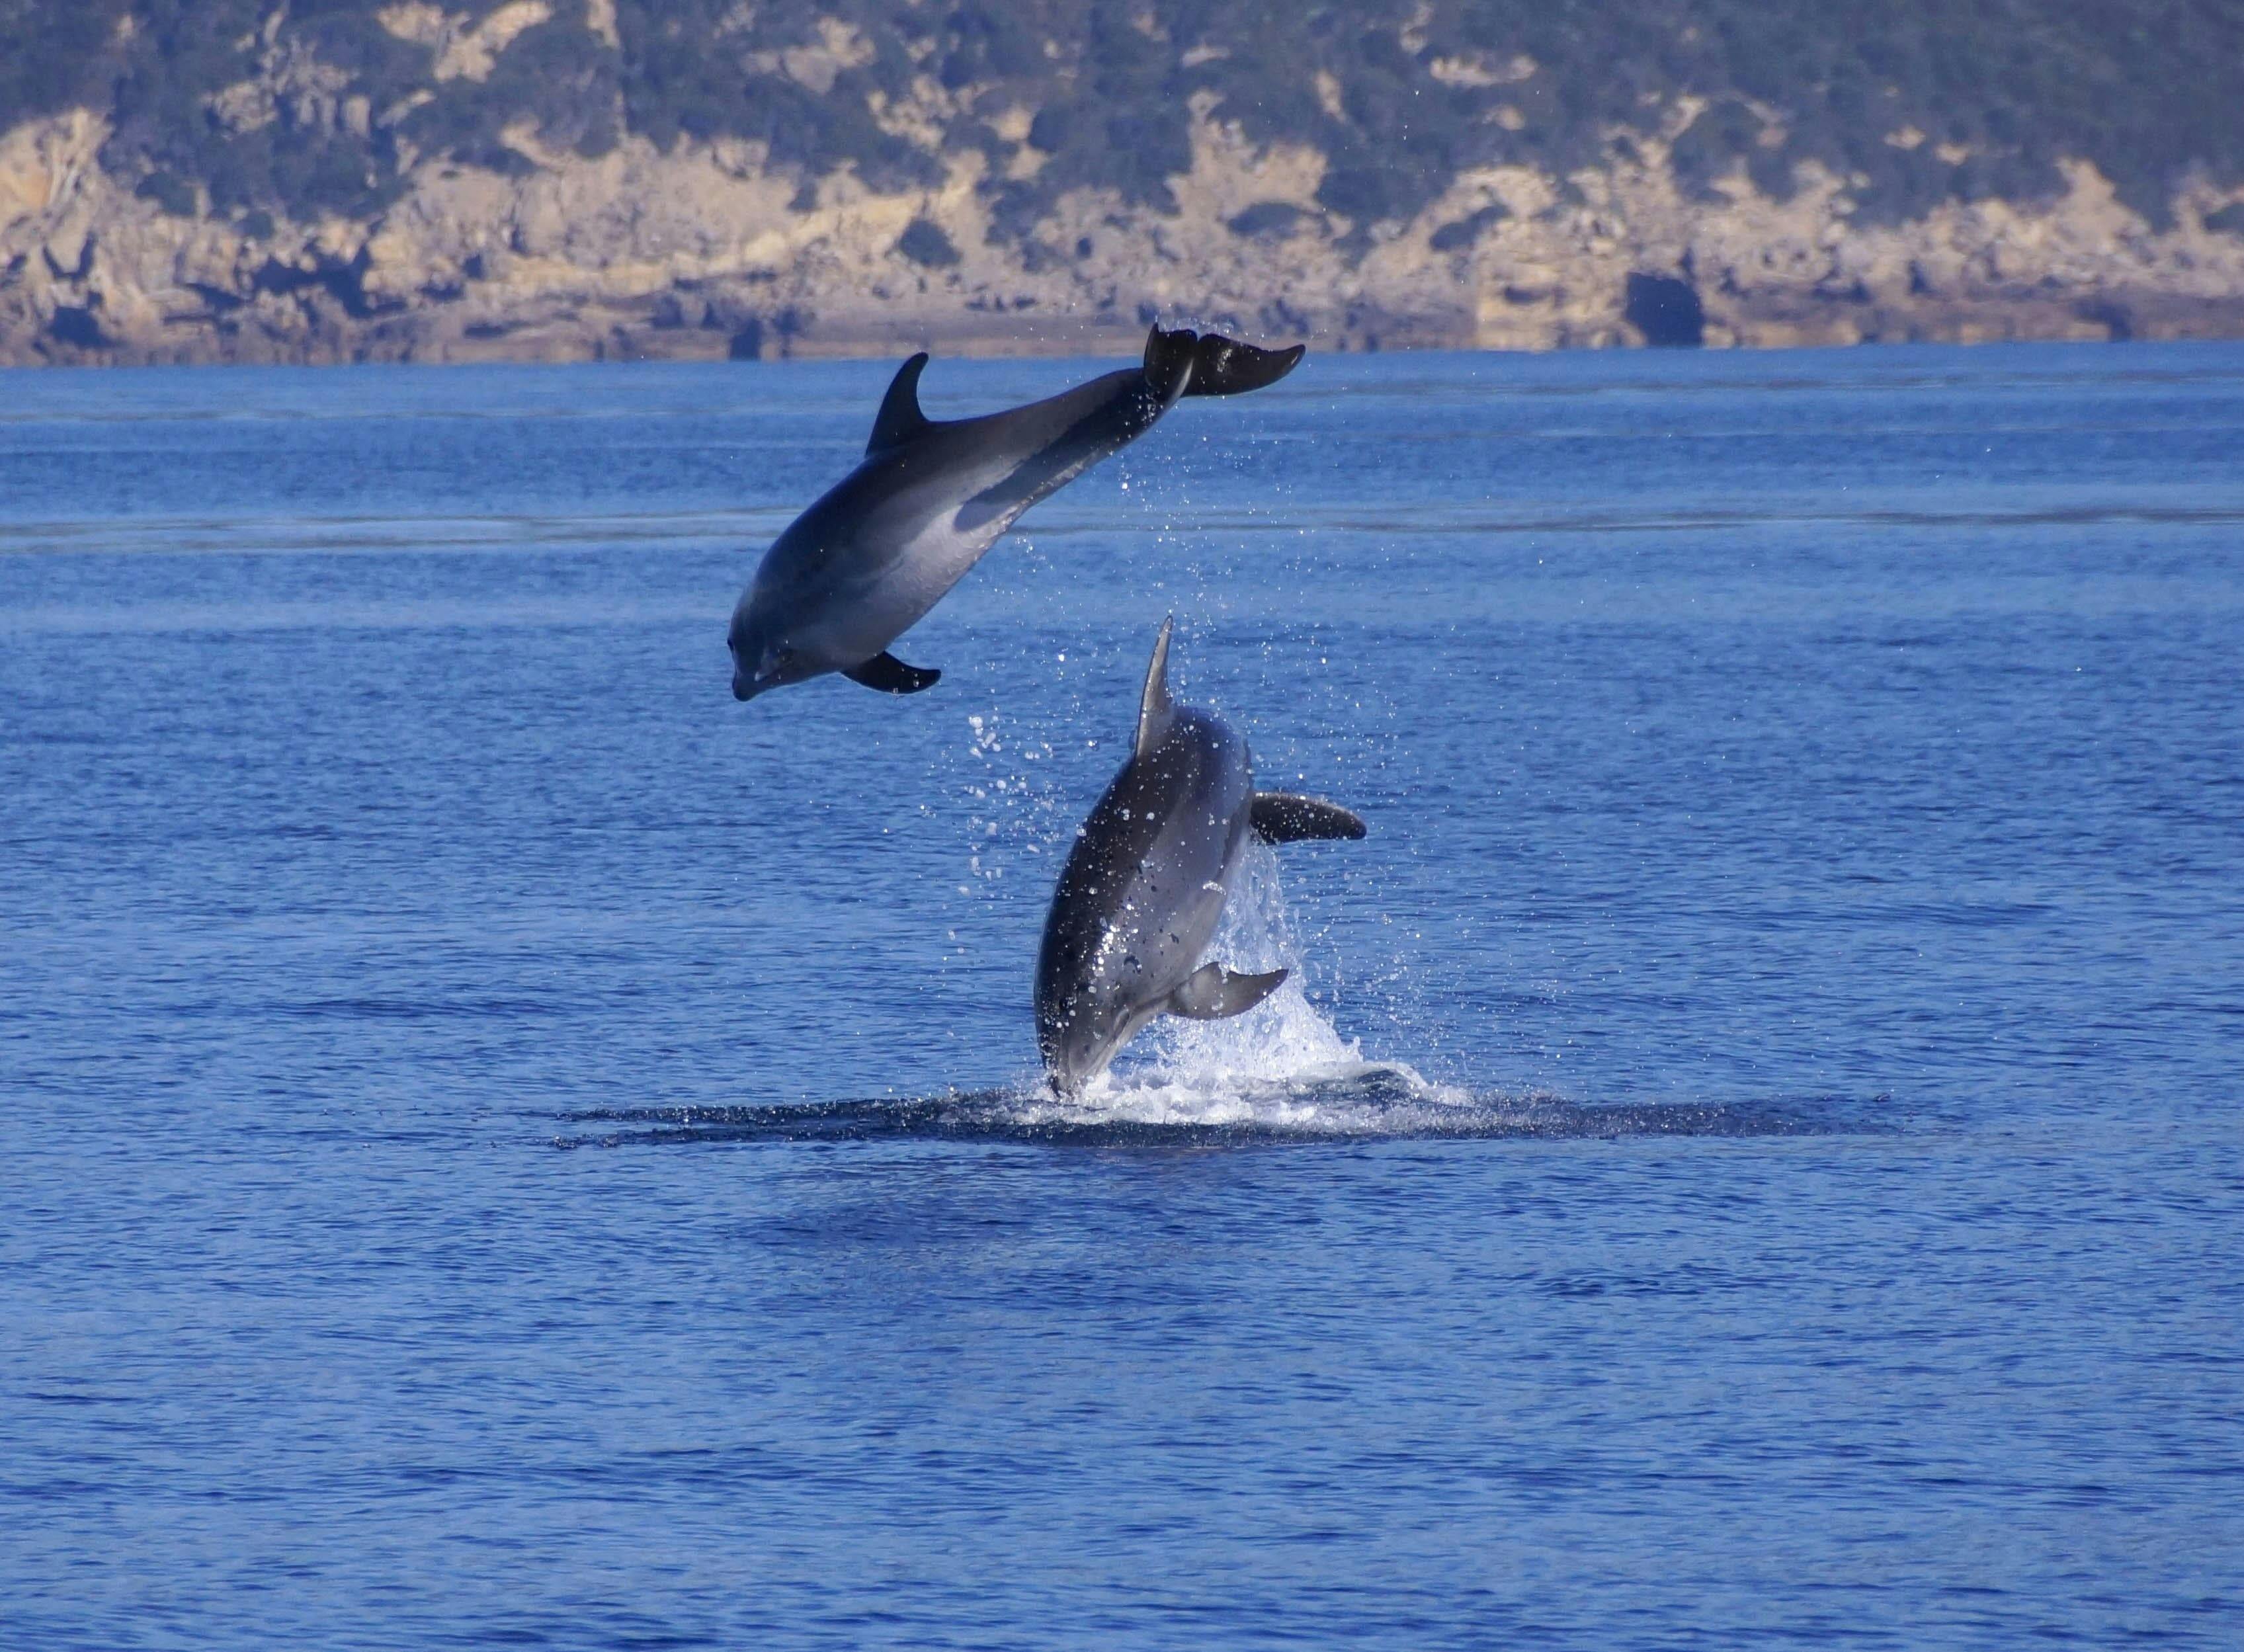 Sardinien Bootsfahrt zur Delphinbeobachtung